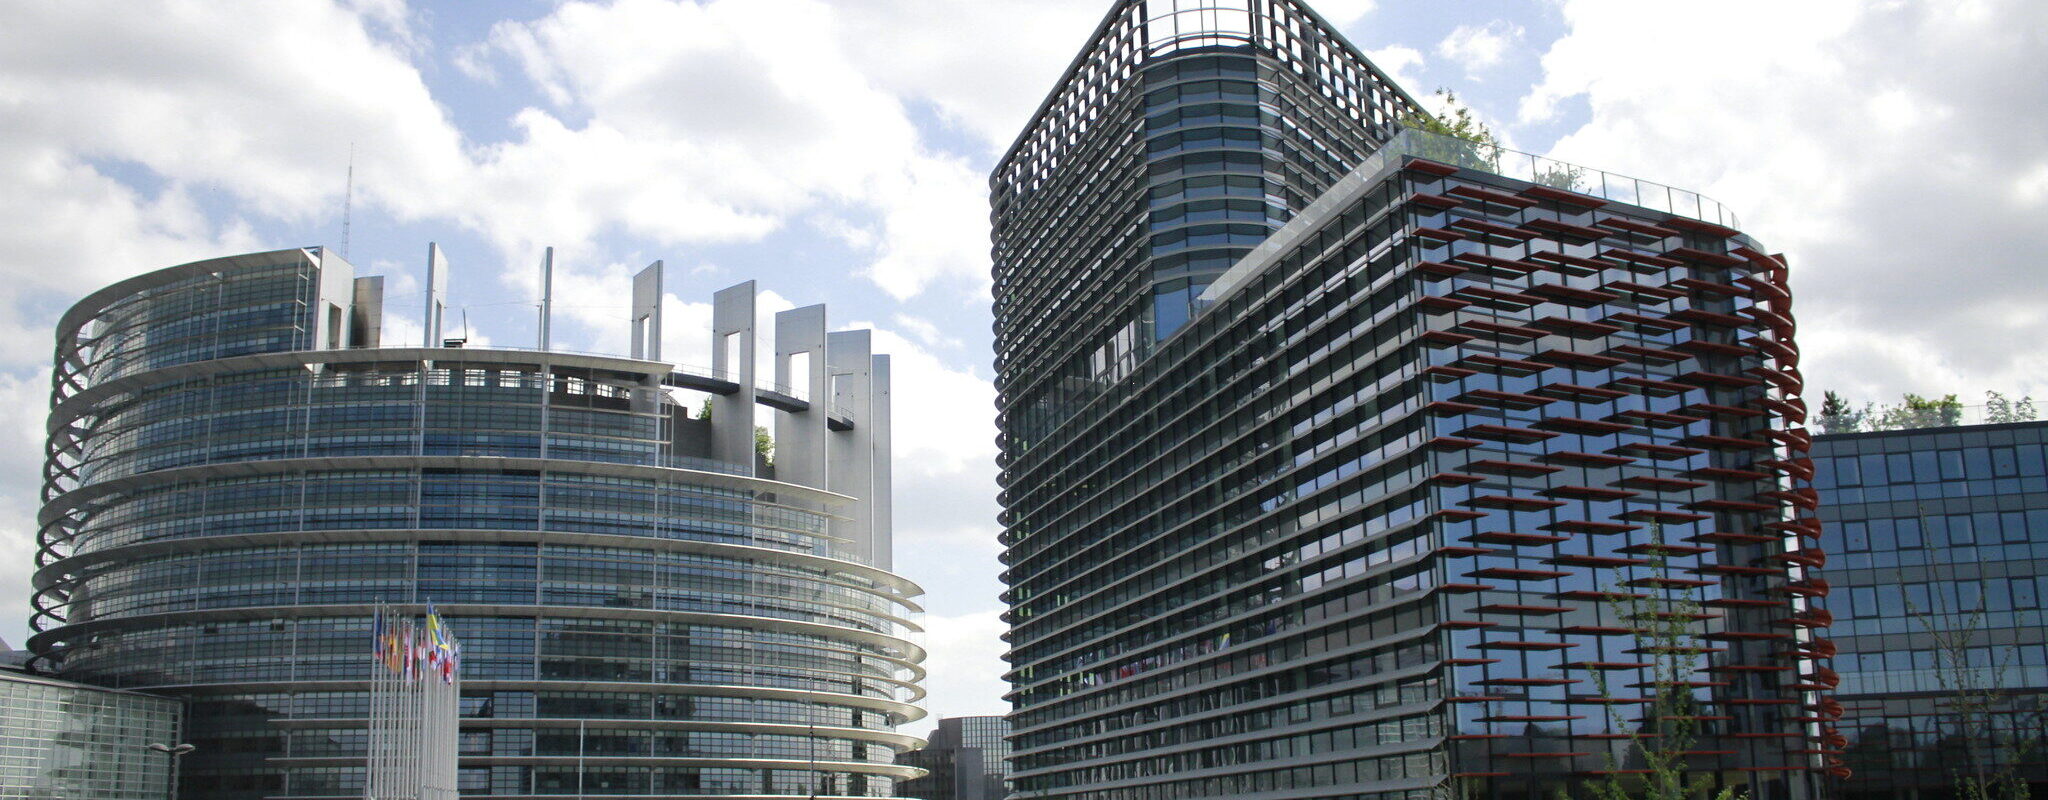 Achat du bâtiment Osmose : le Parlement européen doit se prononcer d’ici le 6 juin